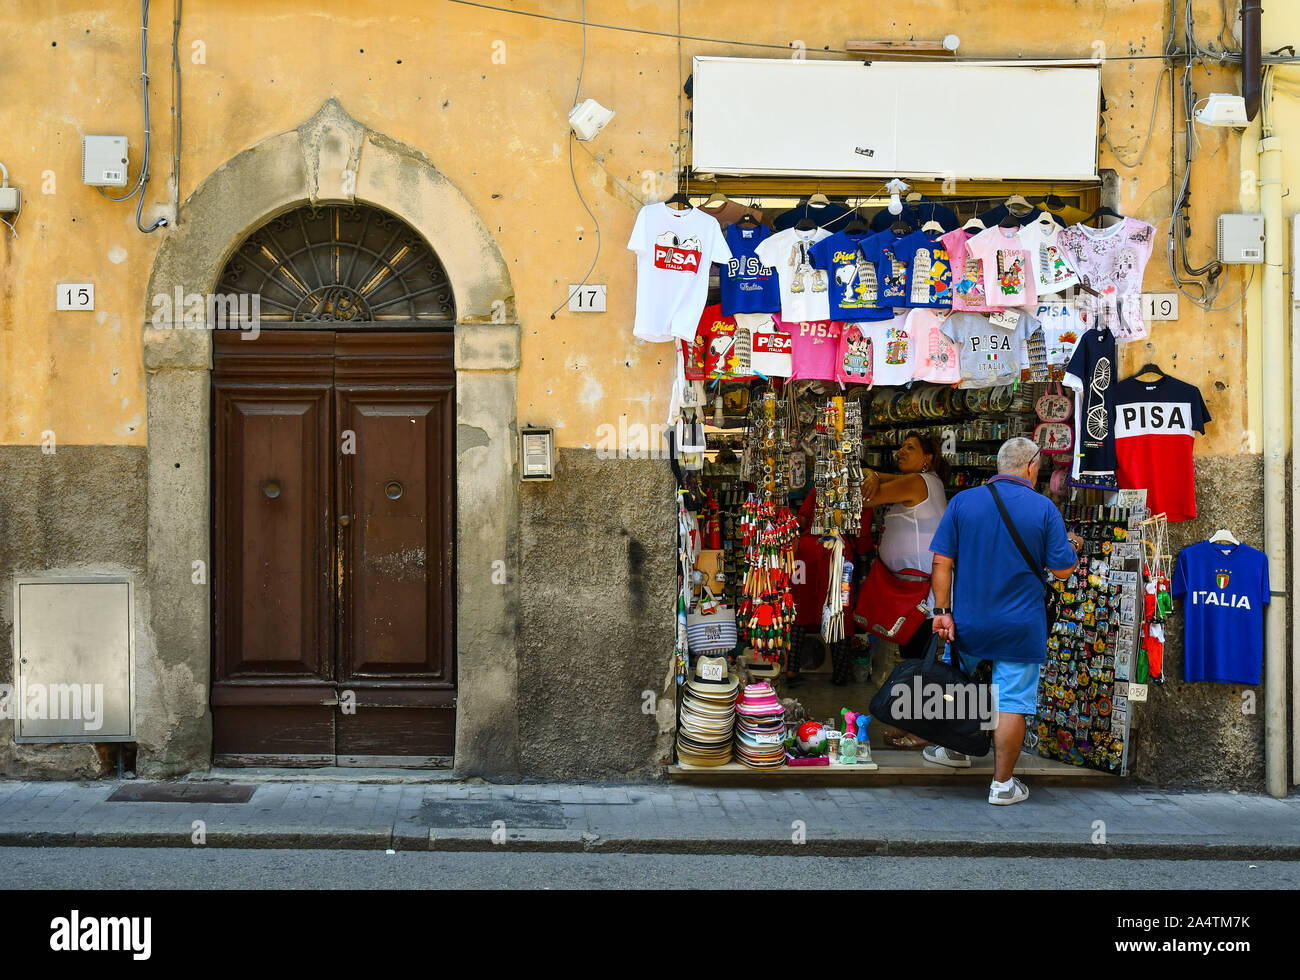 Street View mit Touristen Einkaufen in einem Souvenirshop neben einem alten Eingangstür im historischen Zentrum der berühmten Stadt Pisa, Toskana, Italien Stockfoto